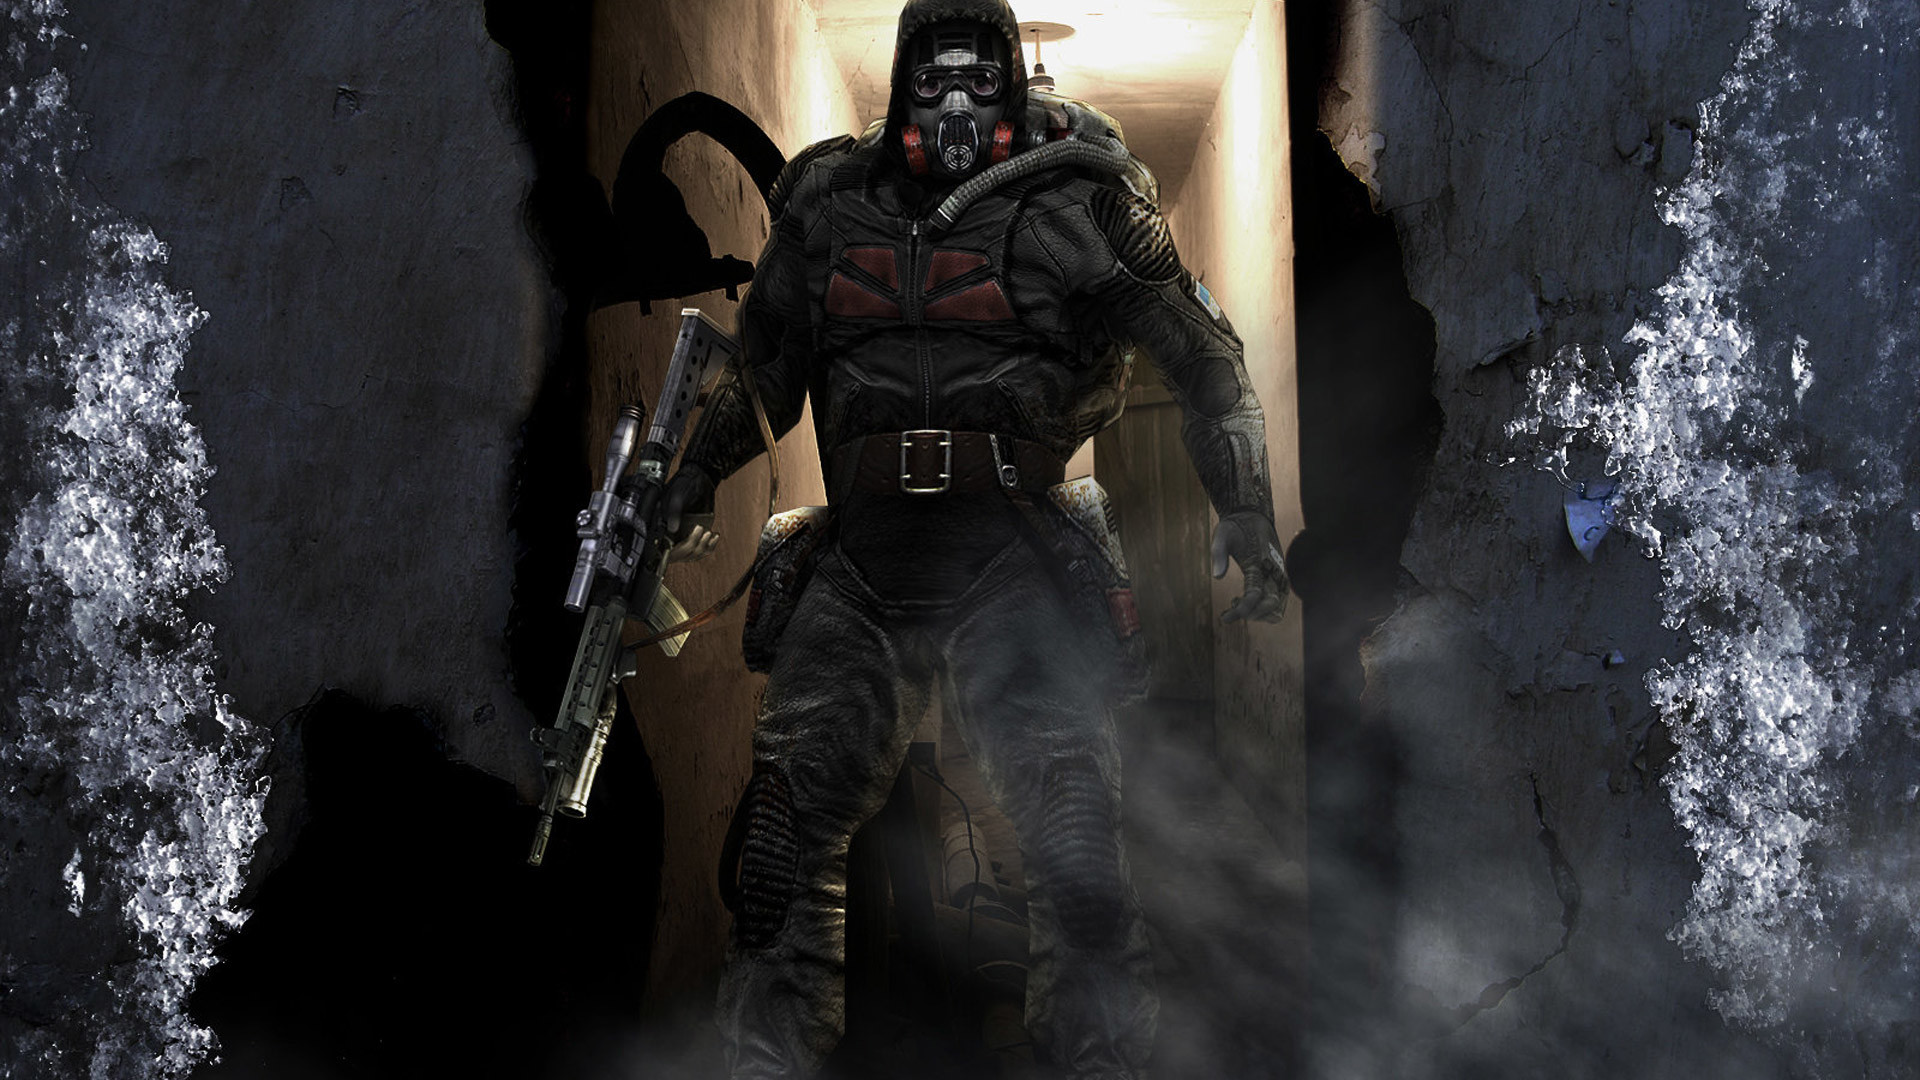 Stalker - Stalker Gas Mask Soldier , HD Wallpaper & Backgrounds